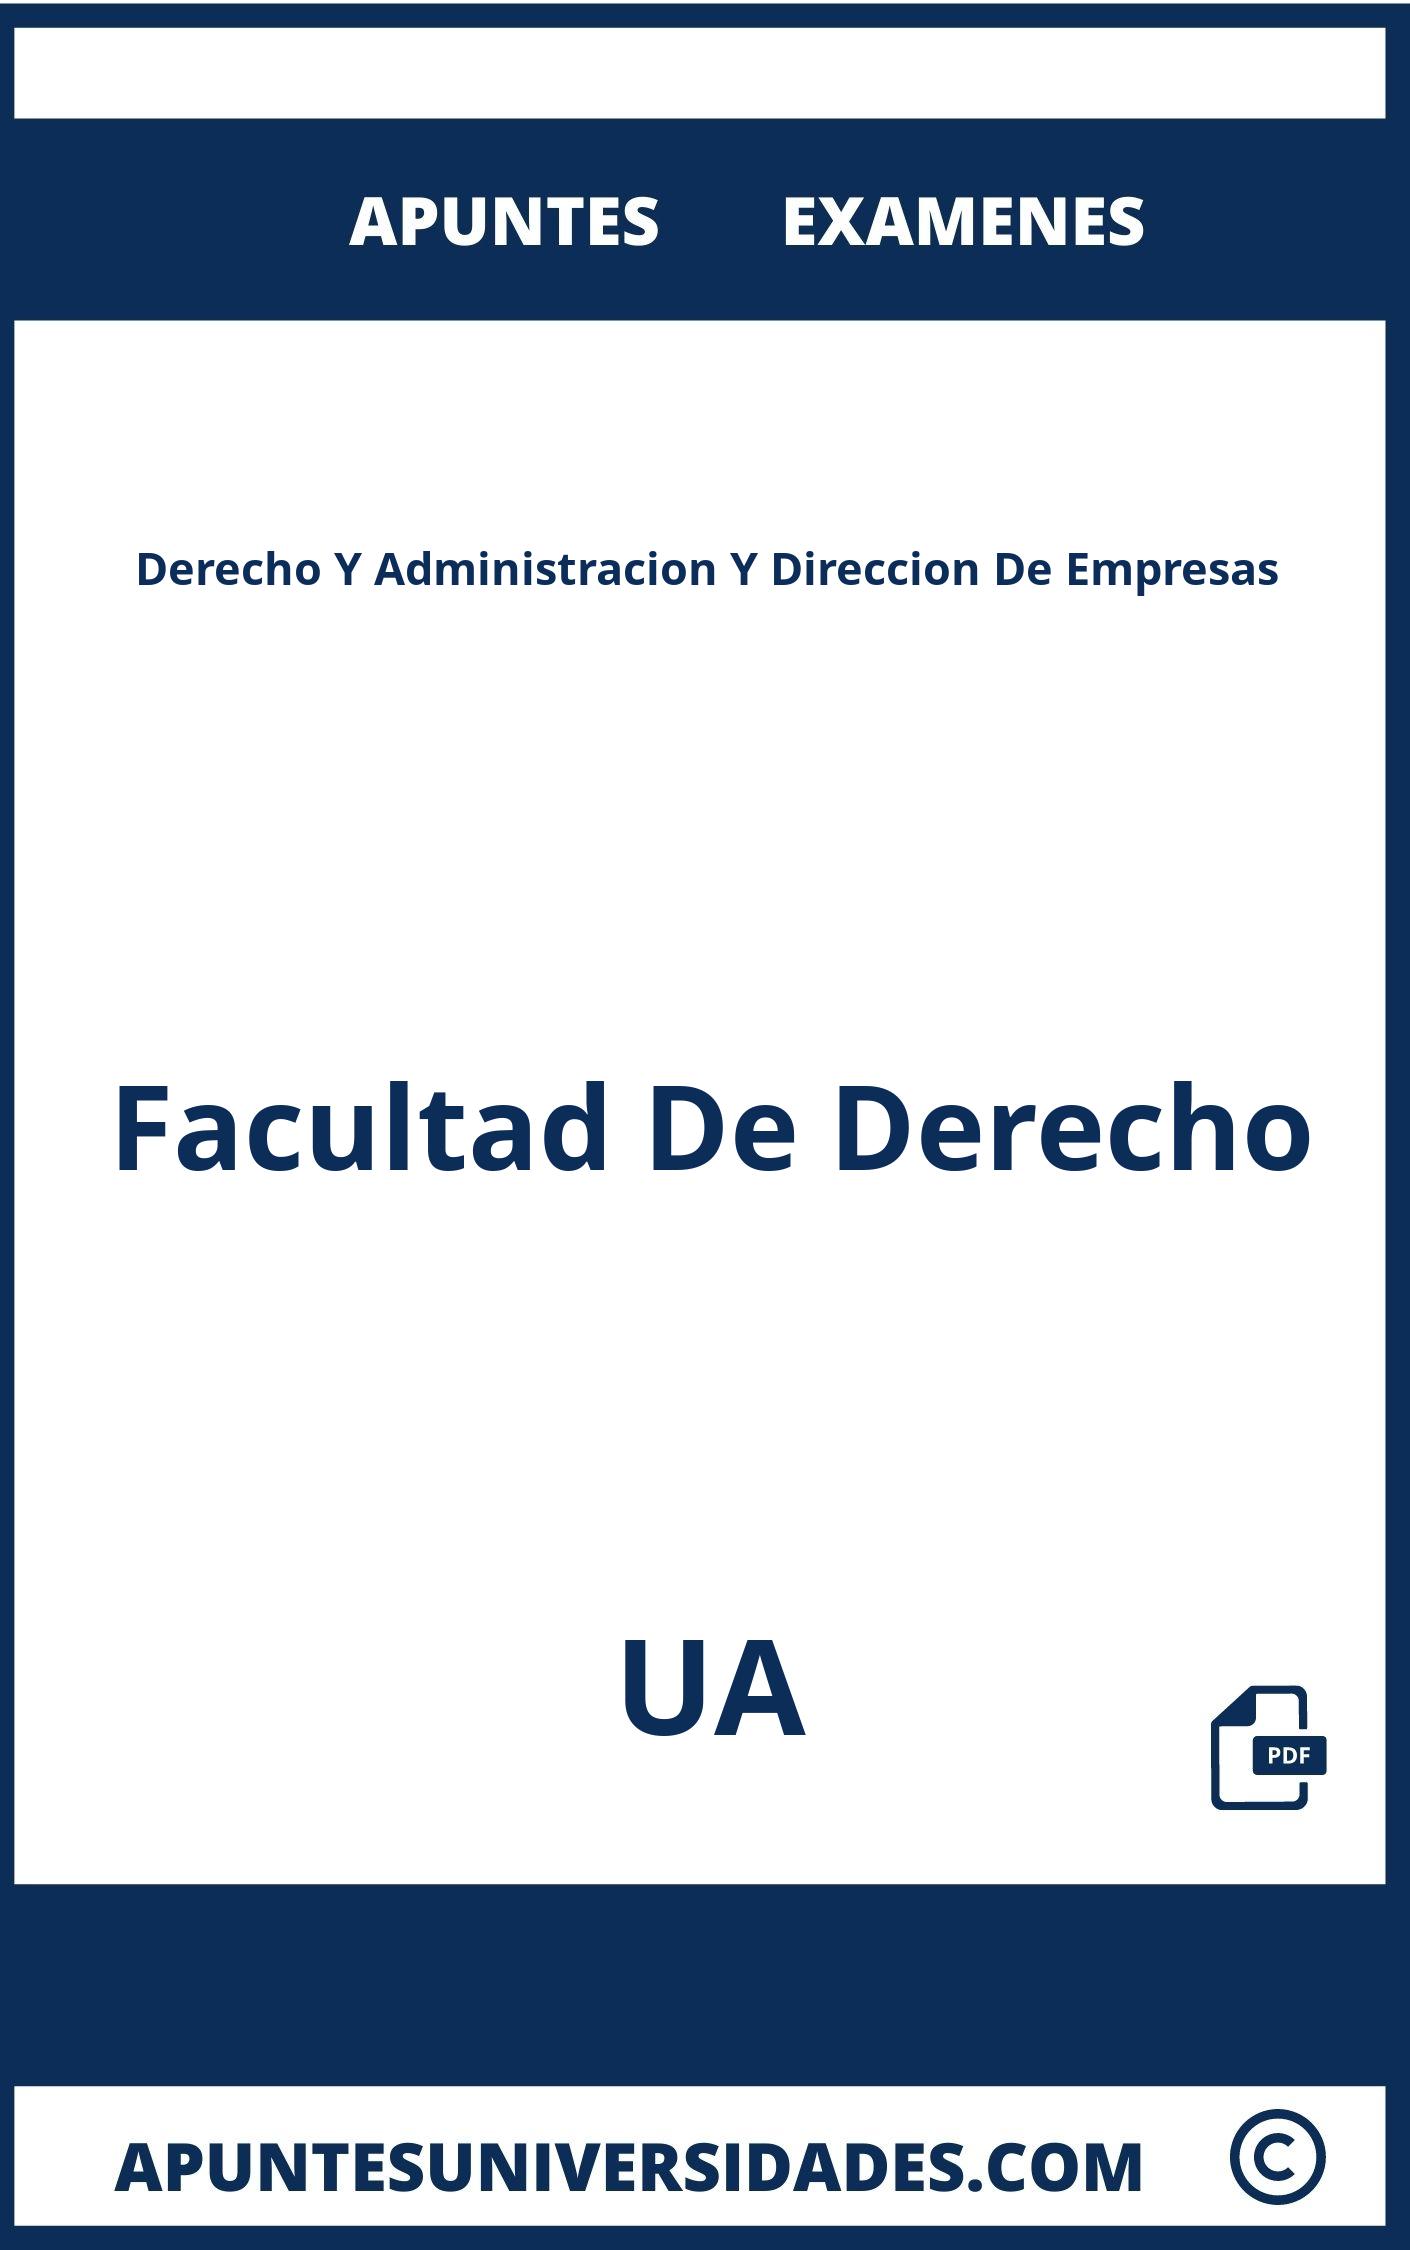 Examenes Derecho Y Administracion Y Direccion De Empresas UA y Apuntes